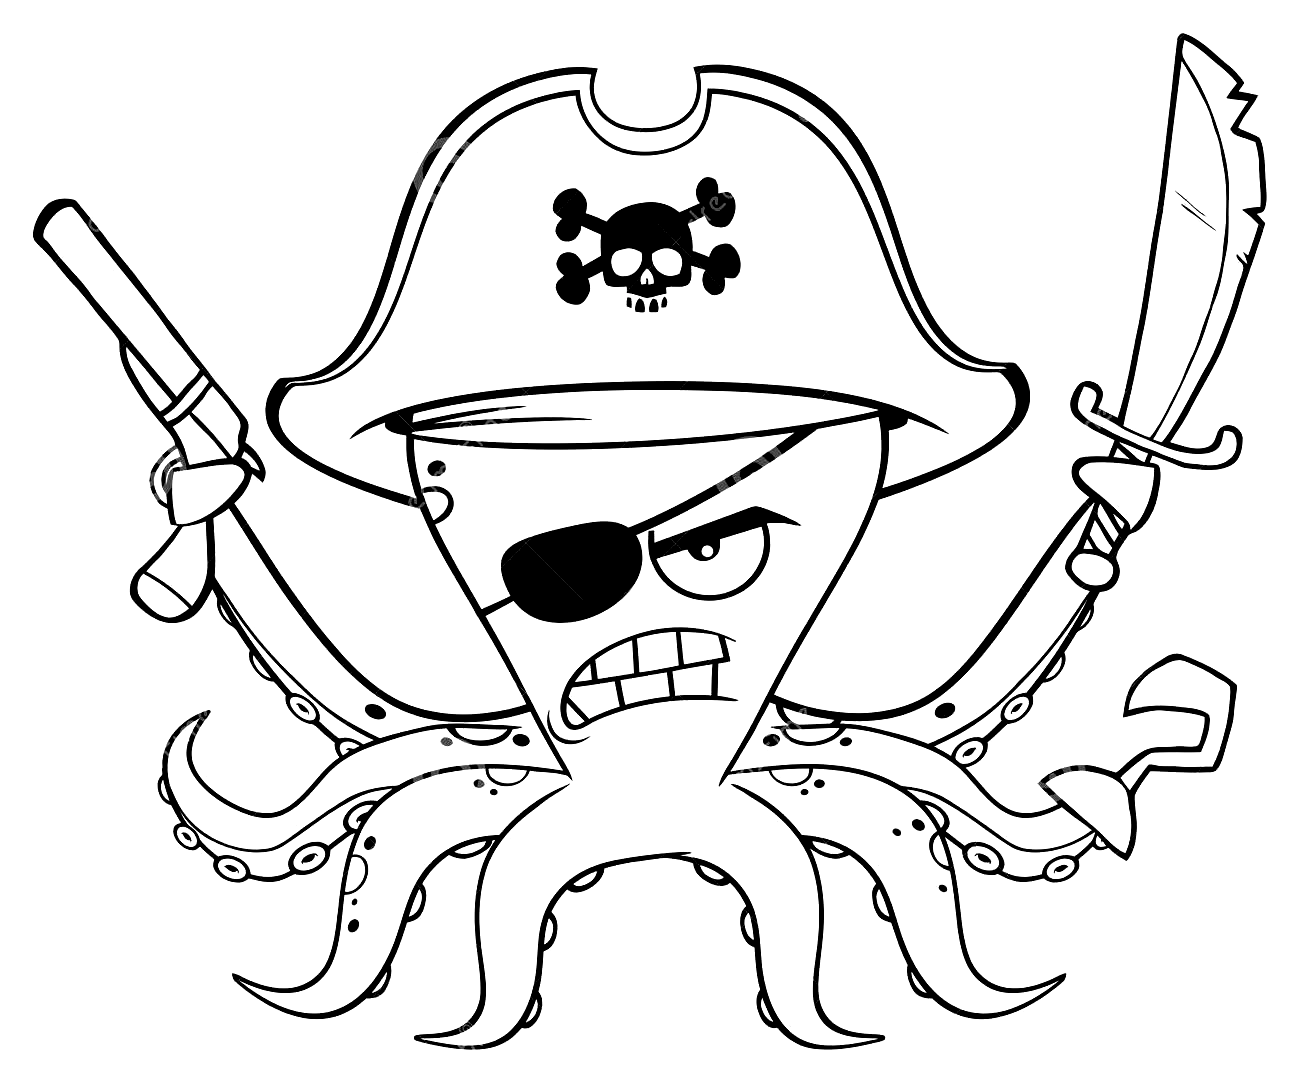 Wütende Piraten-Oktopus-Malseite